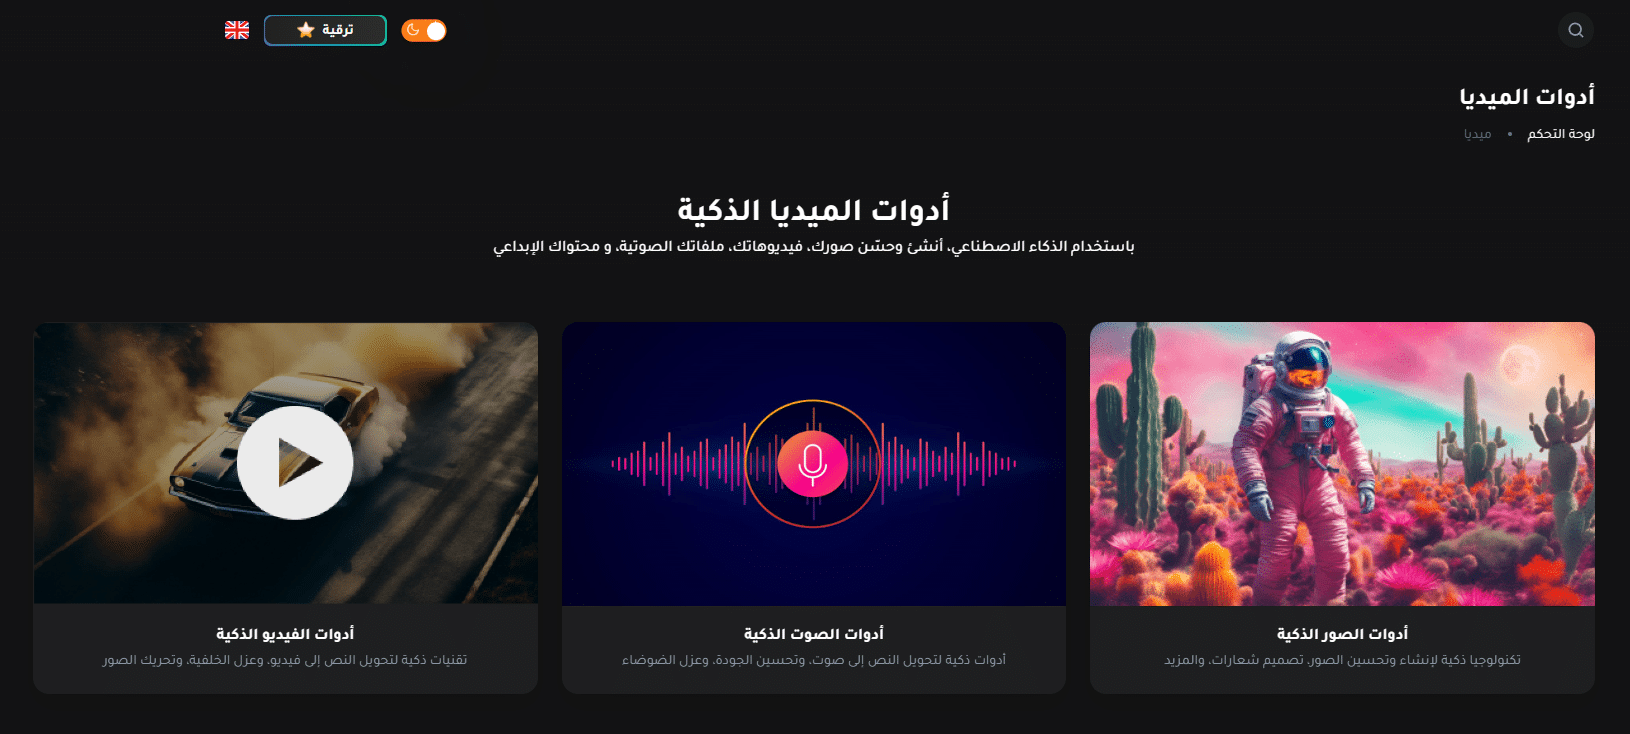 موقع Araby AI يعطيك مجموعة أدوات ذكاء إصطناعي داعمة للعربية 2